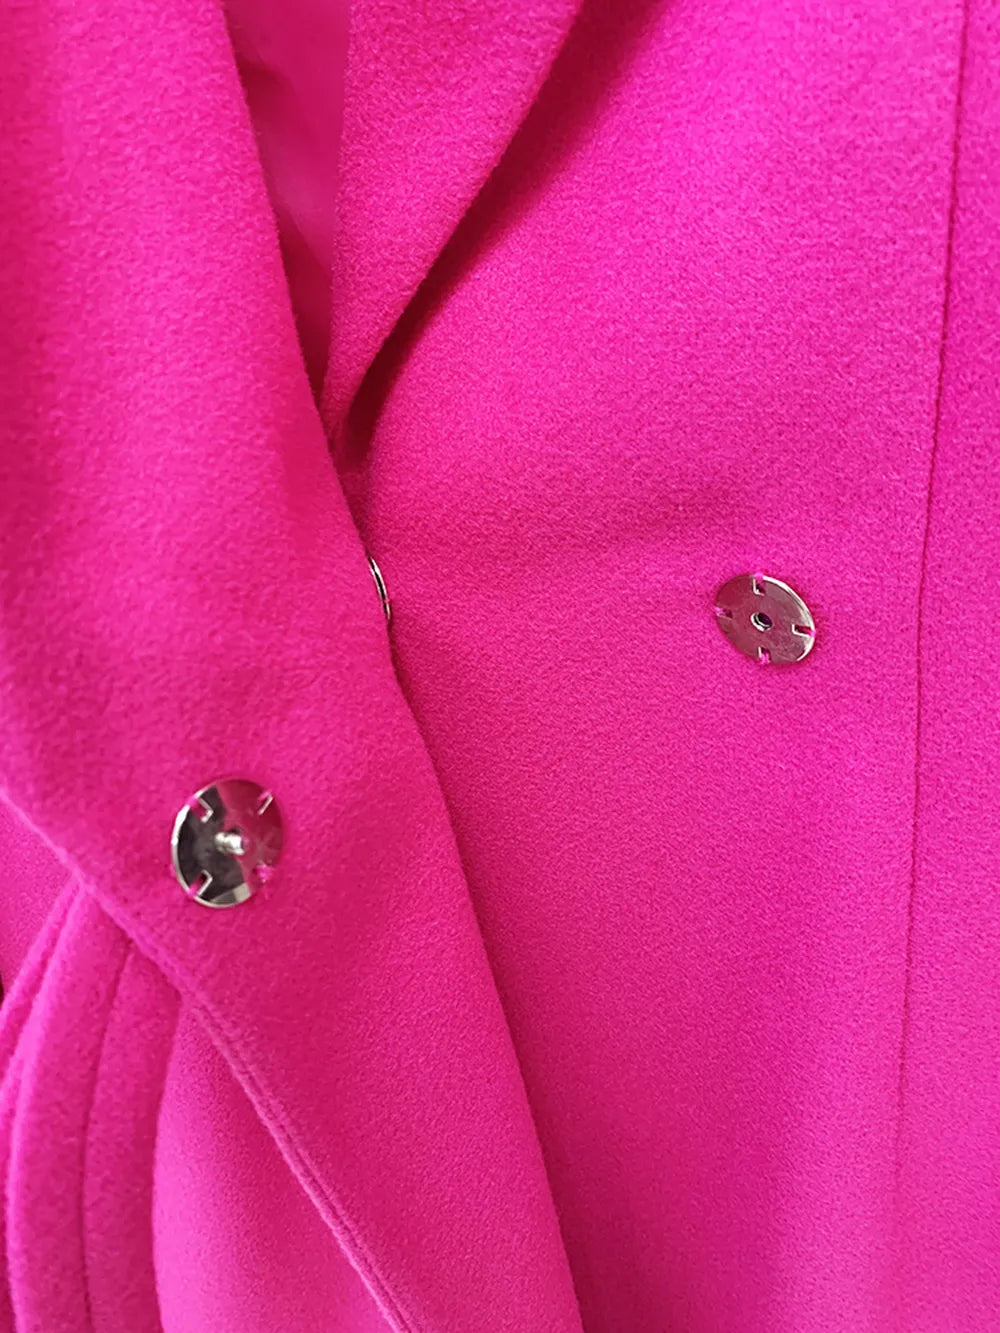 Hillary Vintage Elegant Coat Fashion Closet Clothing